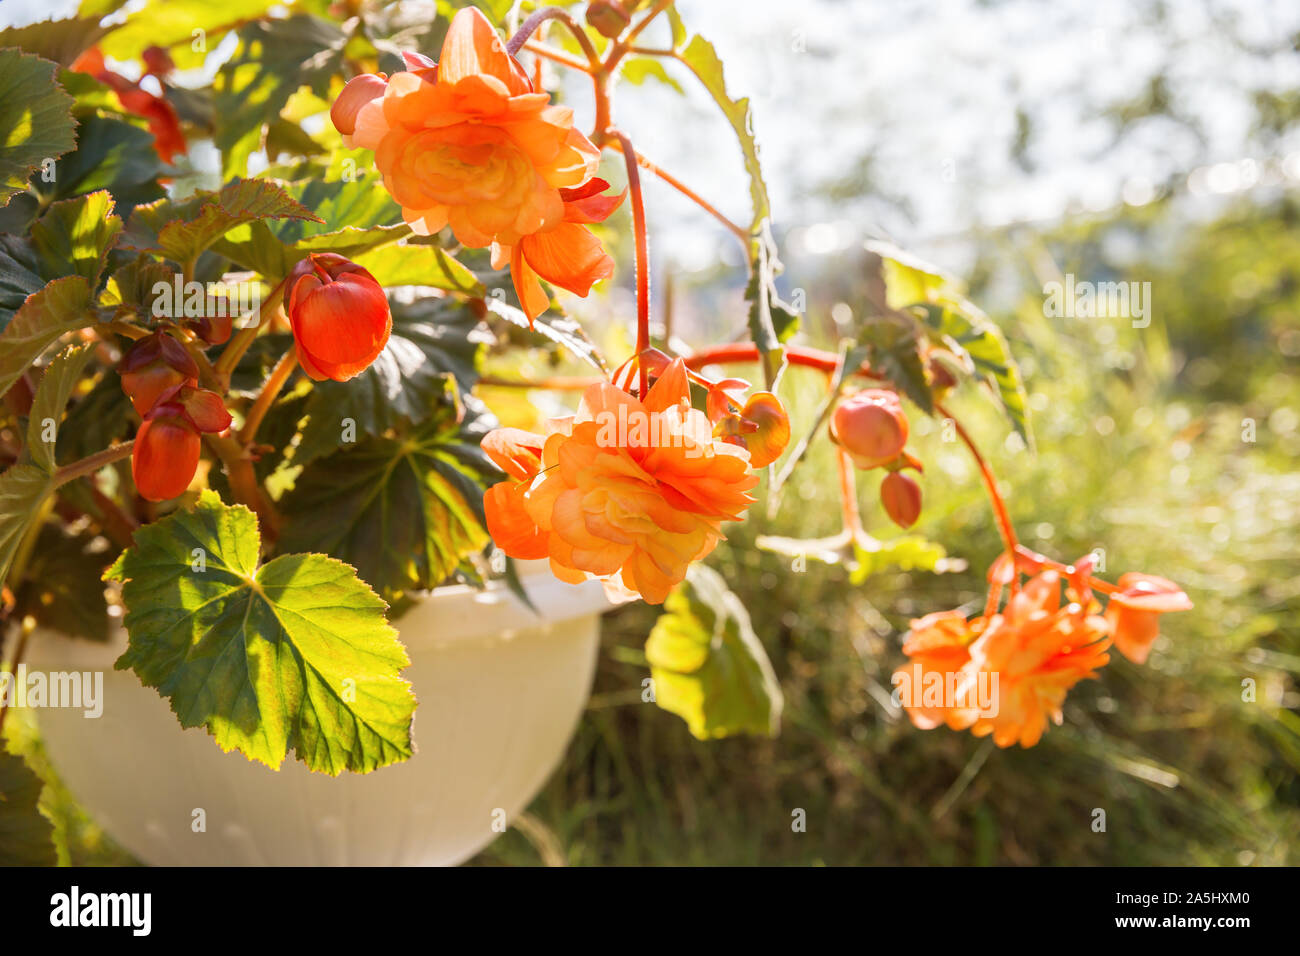 Blühende Begonia wächst in den Blumentopf im Garten. Pflanze mit großen Blumen des Schönen orange Farbton Stockfoto